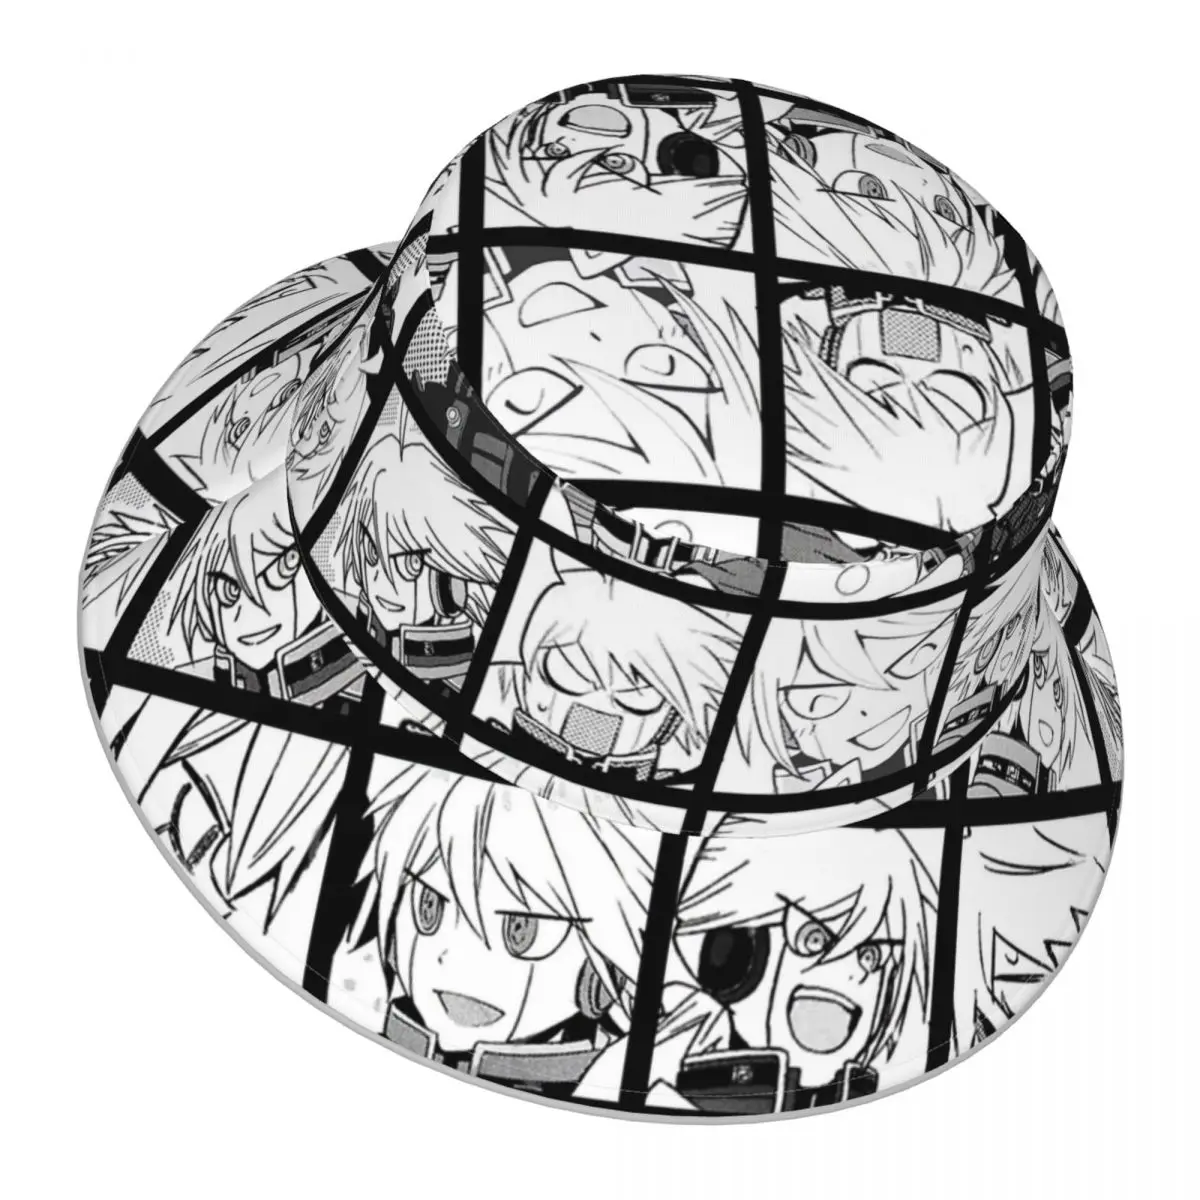 Danganronpa,Kiibo Manga reflective Bucket Hat Men Women Bucket Hat Outdoor Sunscreen Beach Hat Sun Hiking Fishing Cap